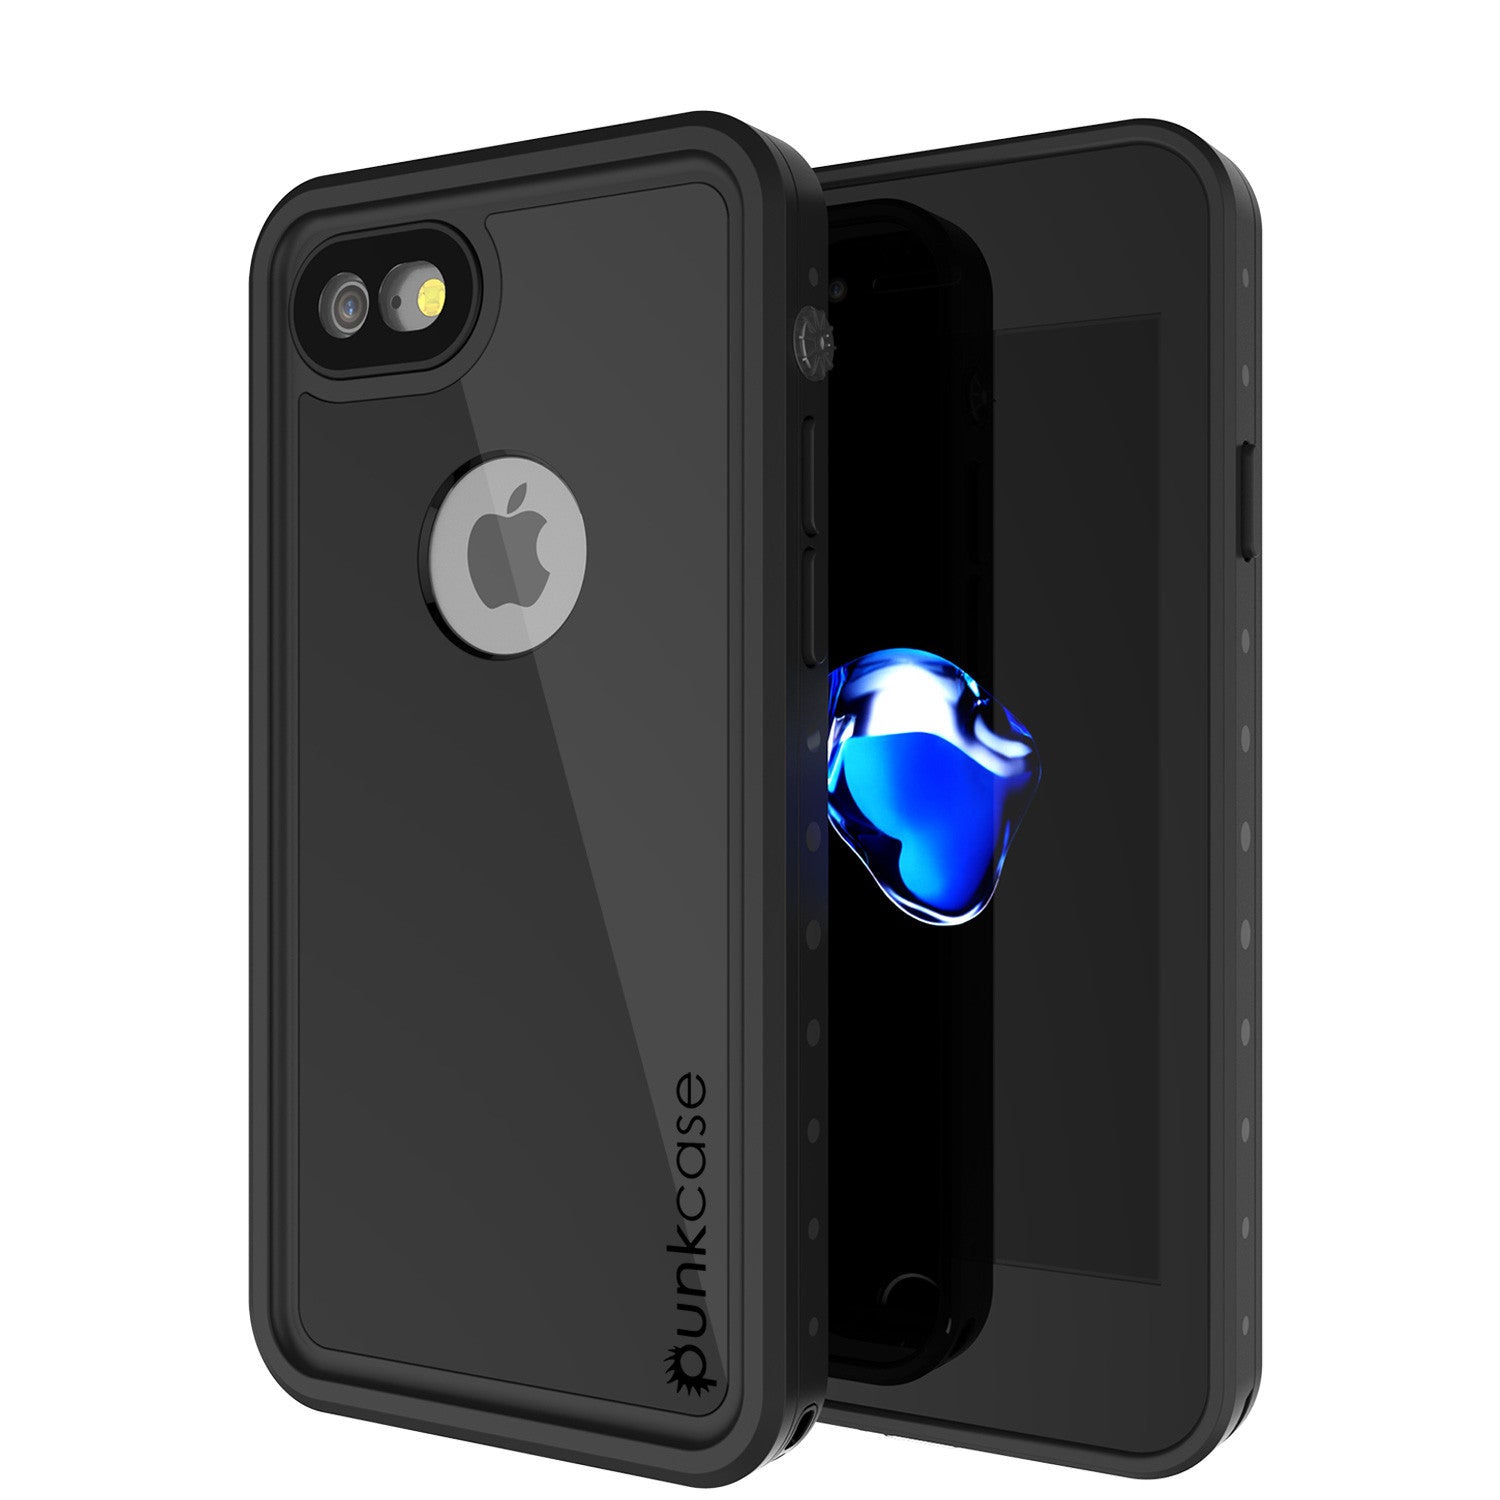 iPhone 7 Waterproof IP68 Case, Punkcase [Black] [StudStar Series] [Slim Fit] [Dirtproof] [Snowproof] (Color in image: black)